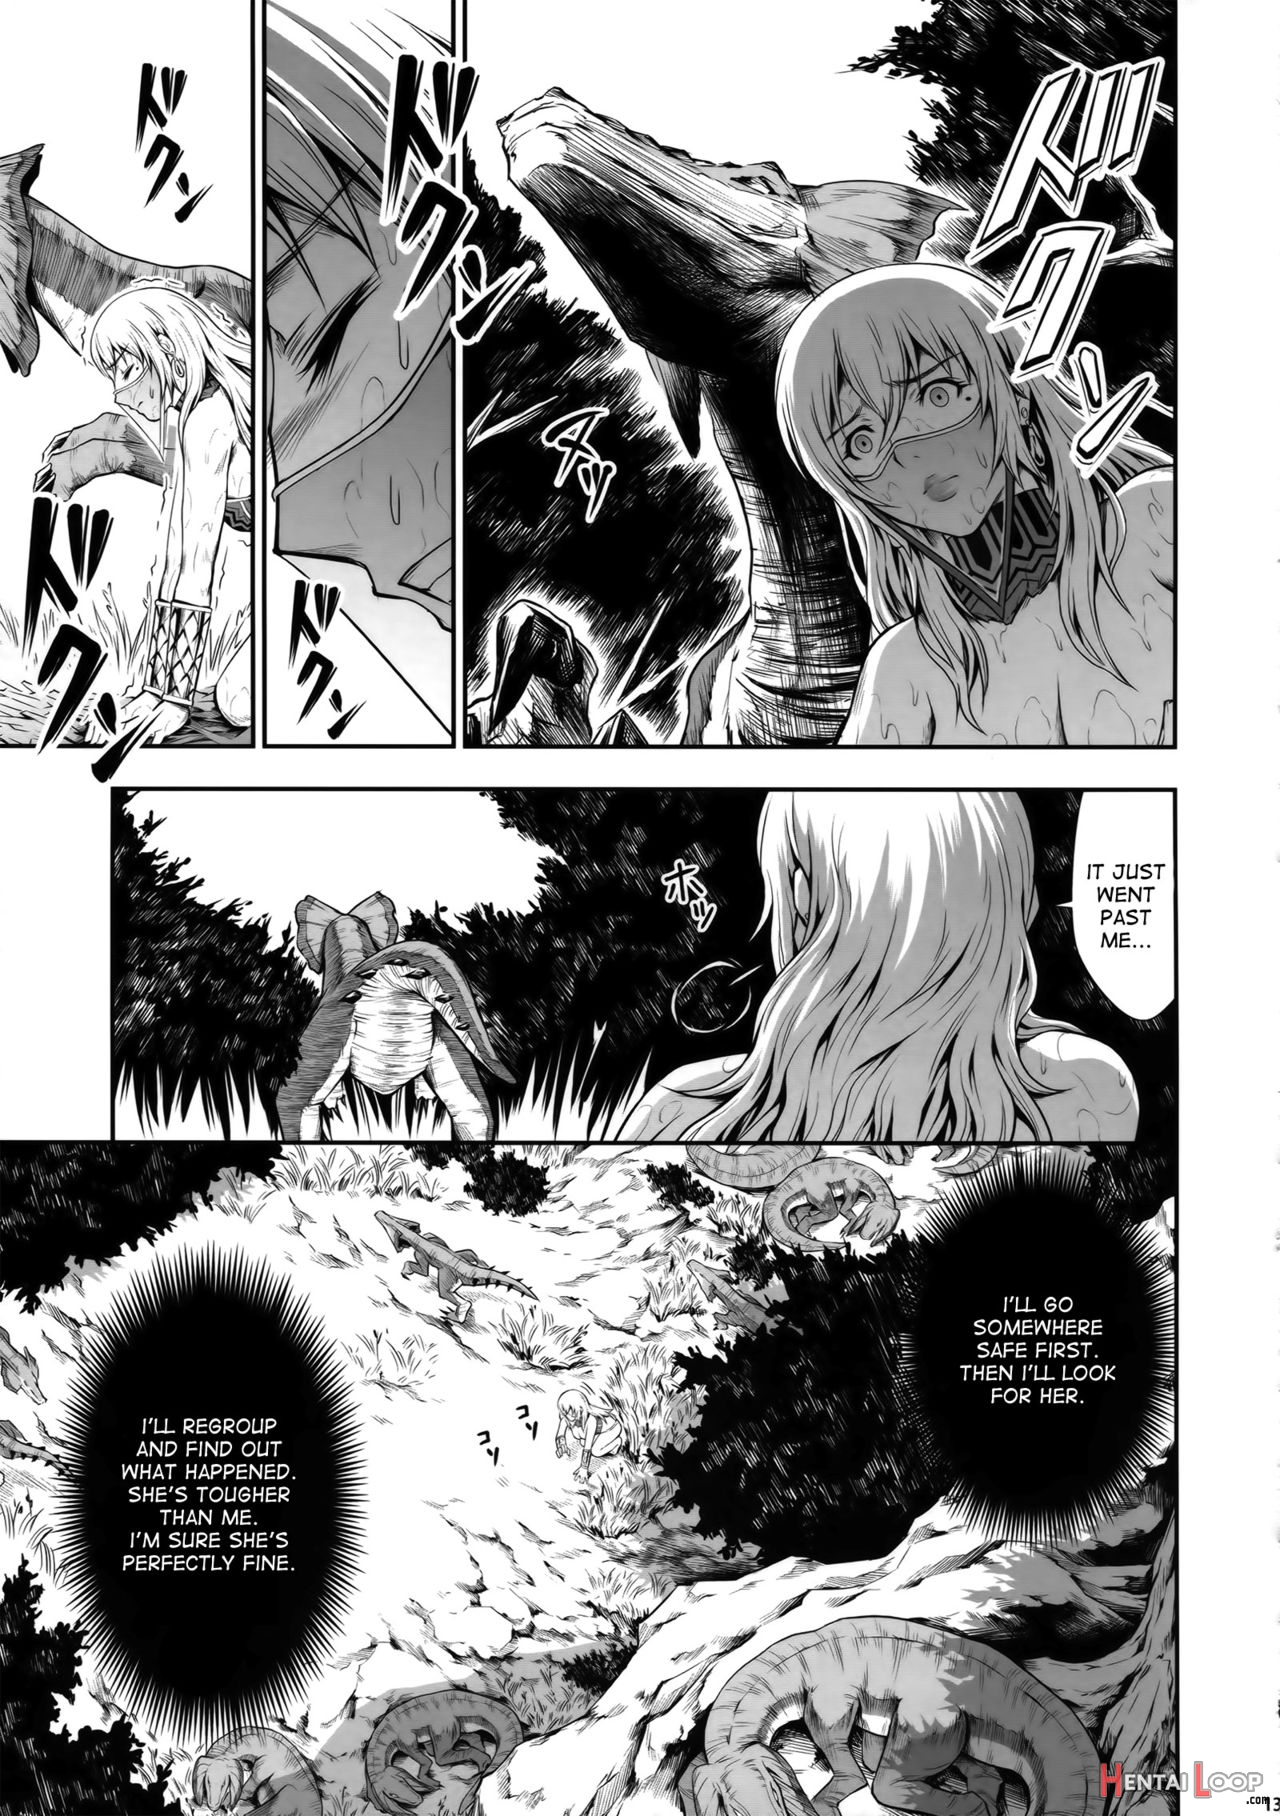 Pair Hunter No Seitai Vol. 2-1 page 11